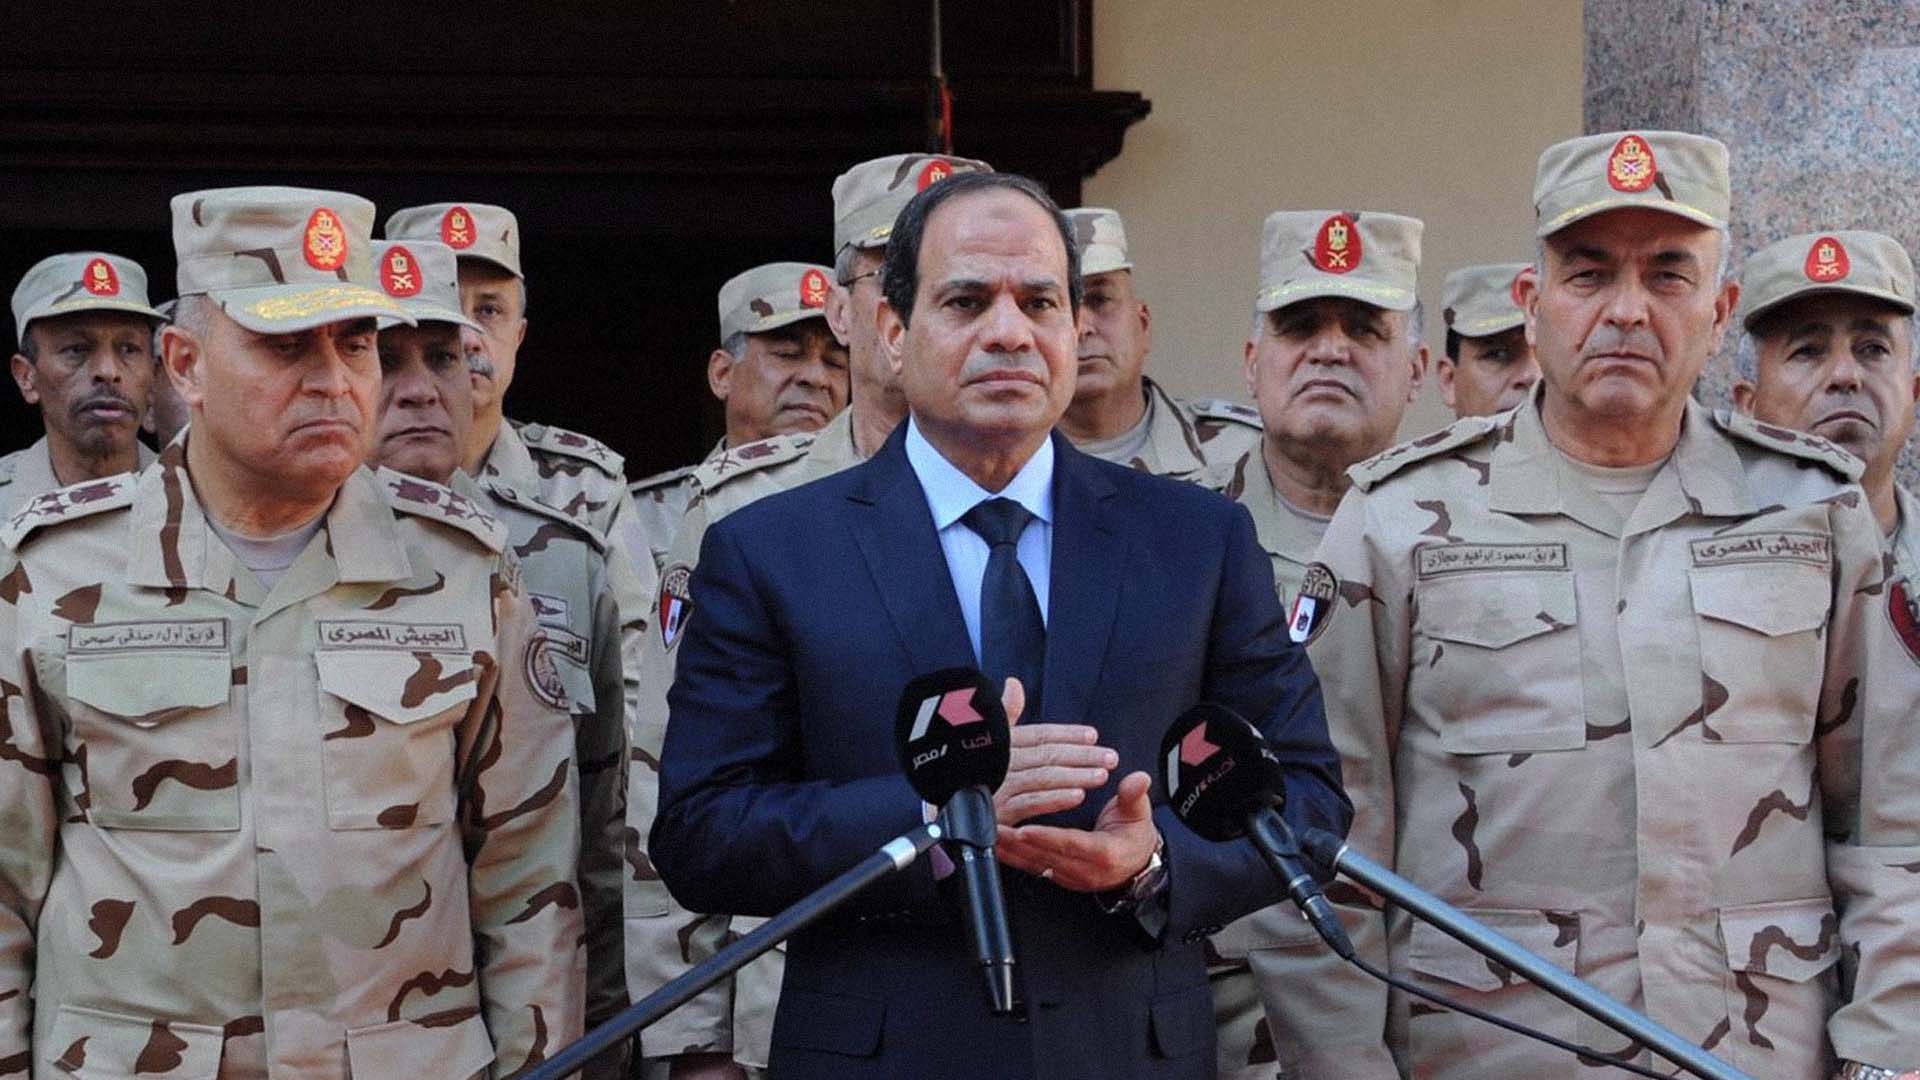 صورة القوات المسلحة تتعهد بانتهاء كافة المهرجانات الإسرائيلية في سيناء قبل الاحتفال بعيد التحرير